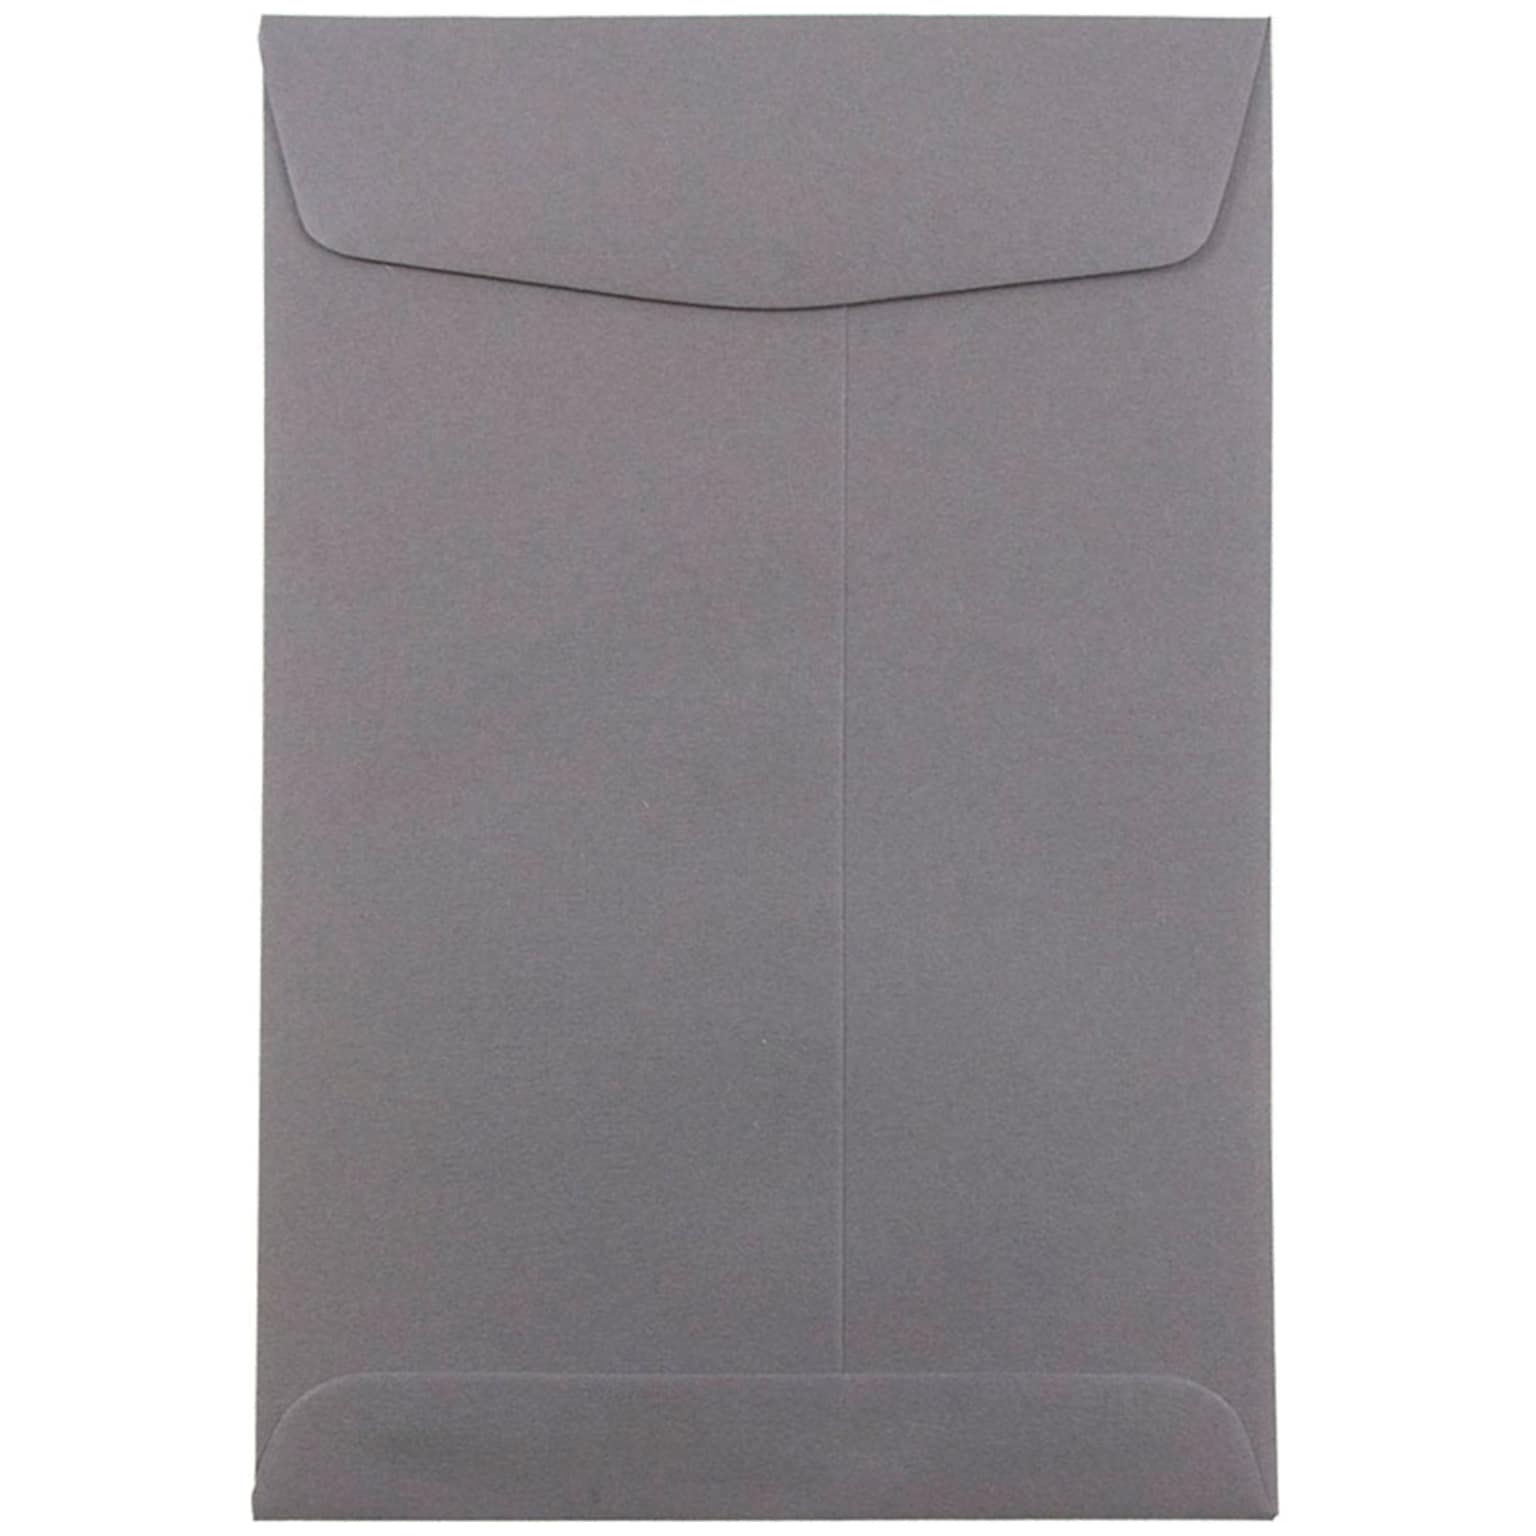 JAM Paper 6 x 9 Open End Catalog Envelopes, Dark Grey, 100/Pack (51285796)